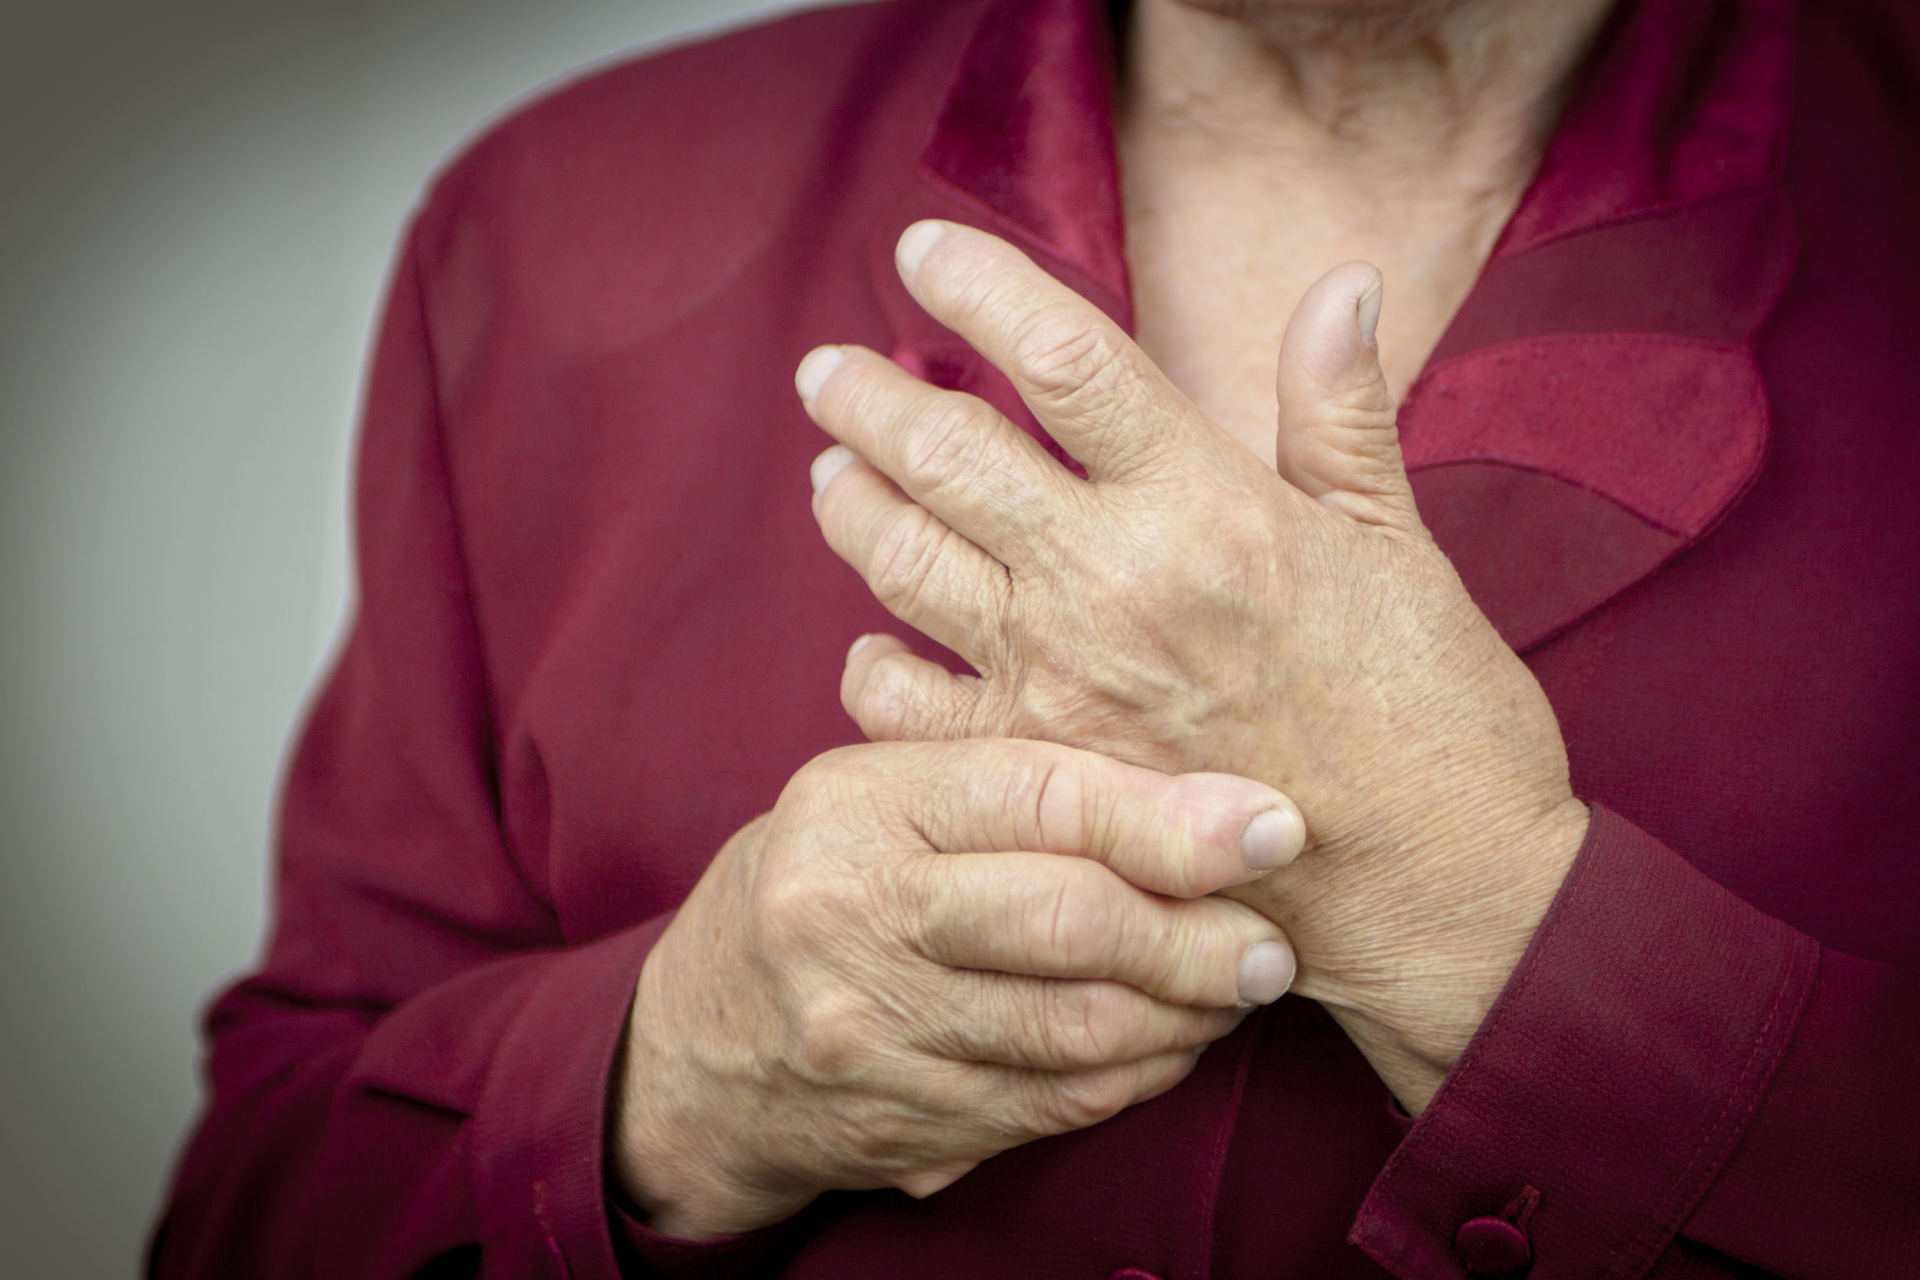 liaudies metodai iš skausmas rankų sąnarius tepalas už artrozės gydymo